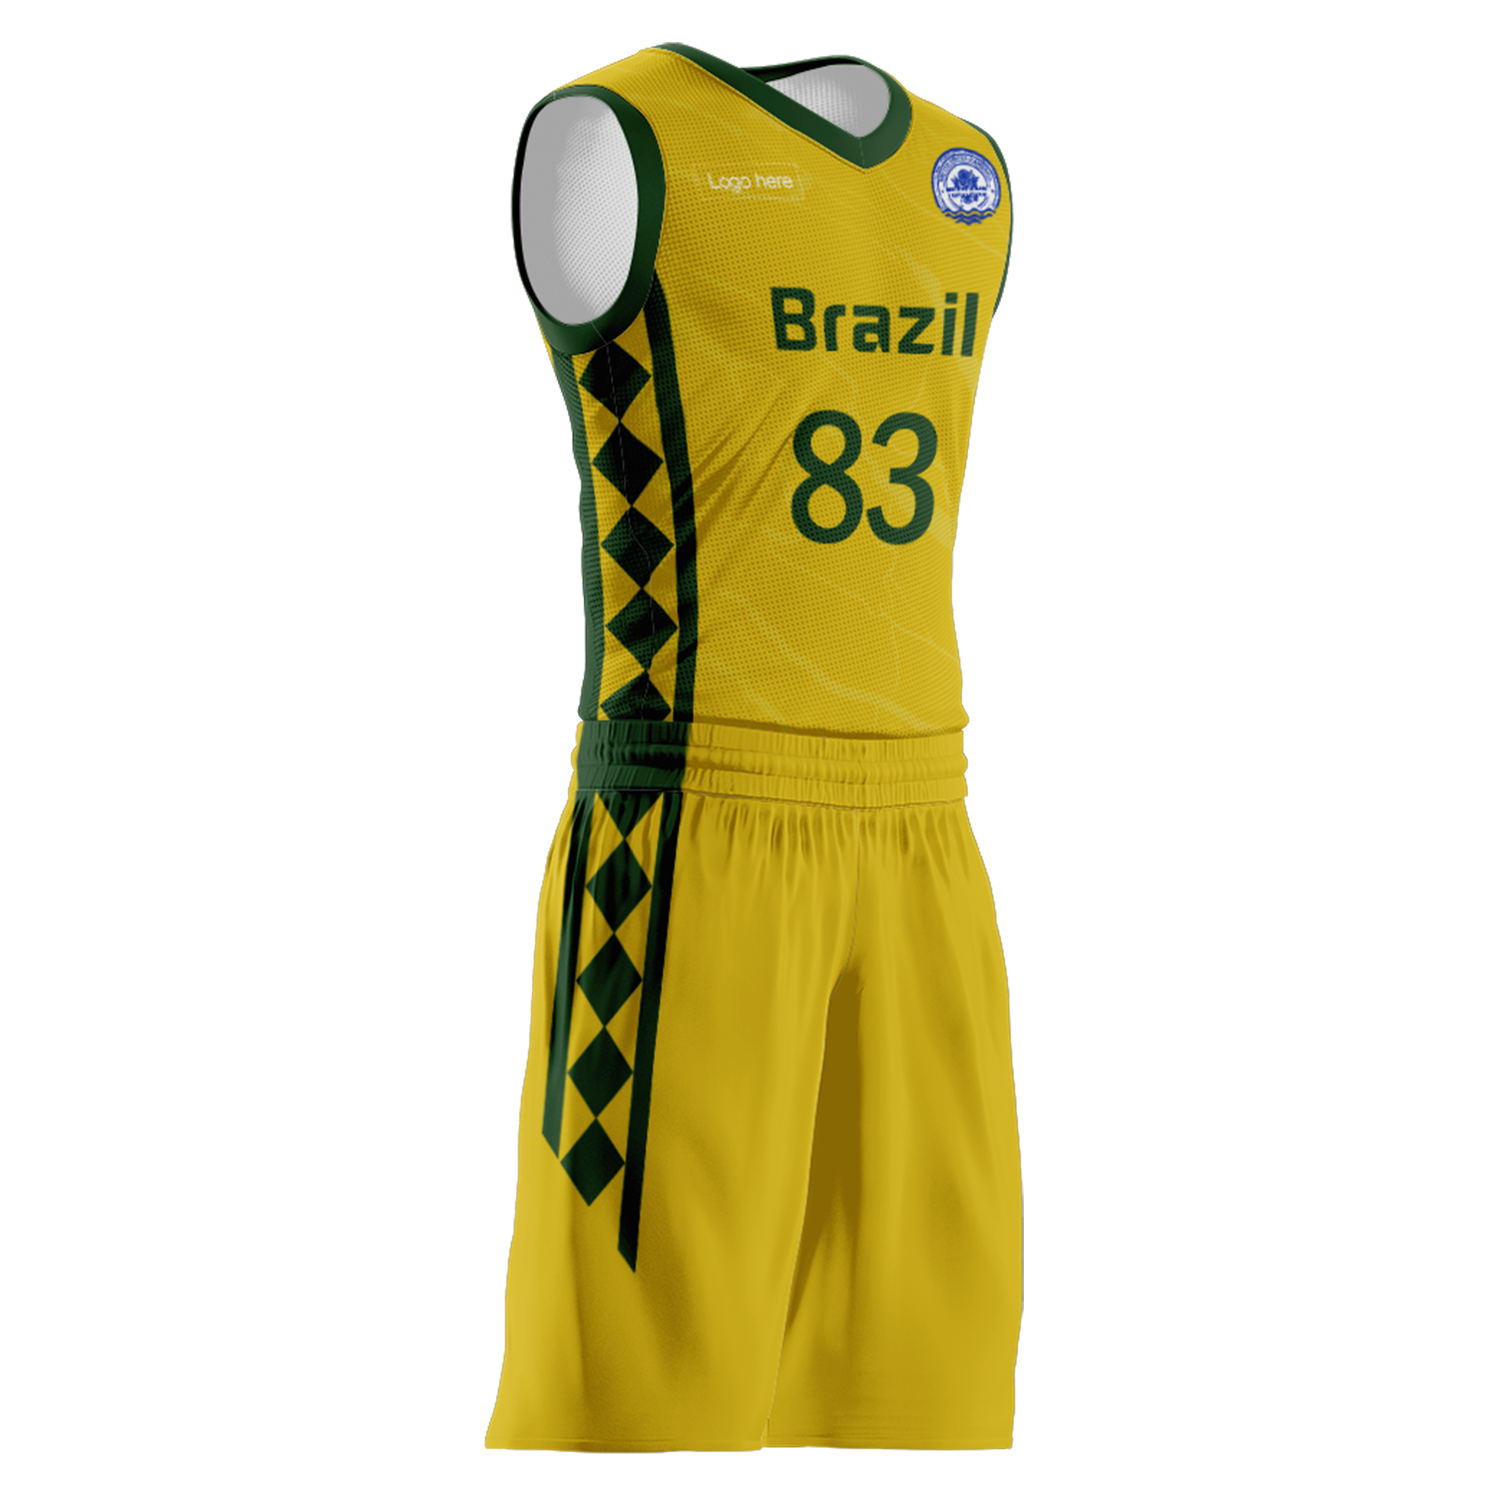 Kundenspezifische Brasilien-Team-Basketballanzüge